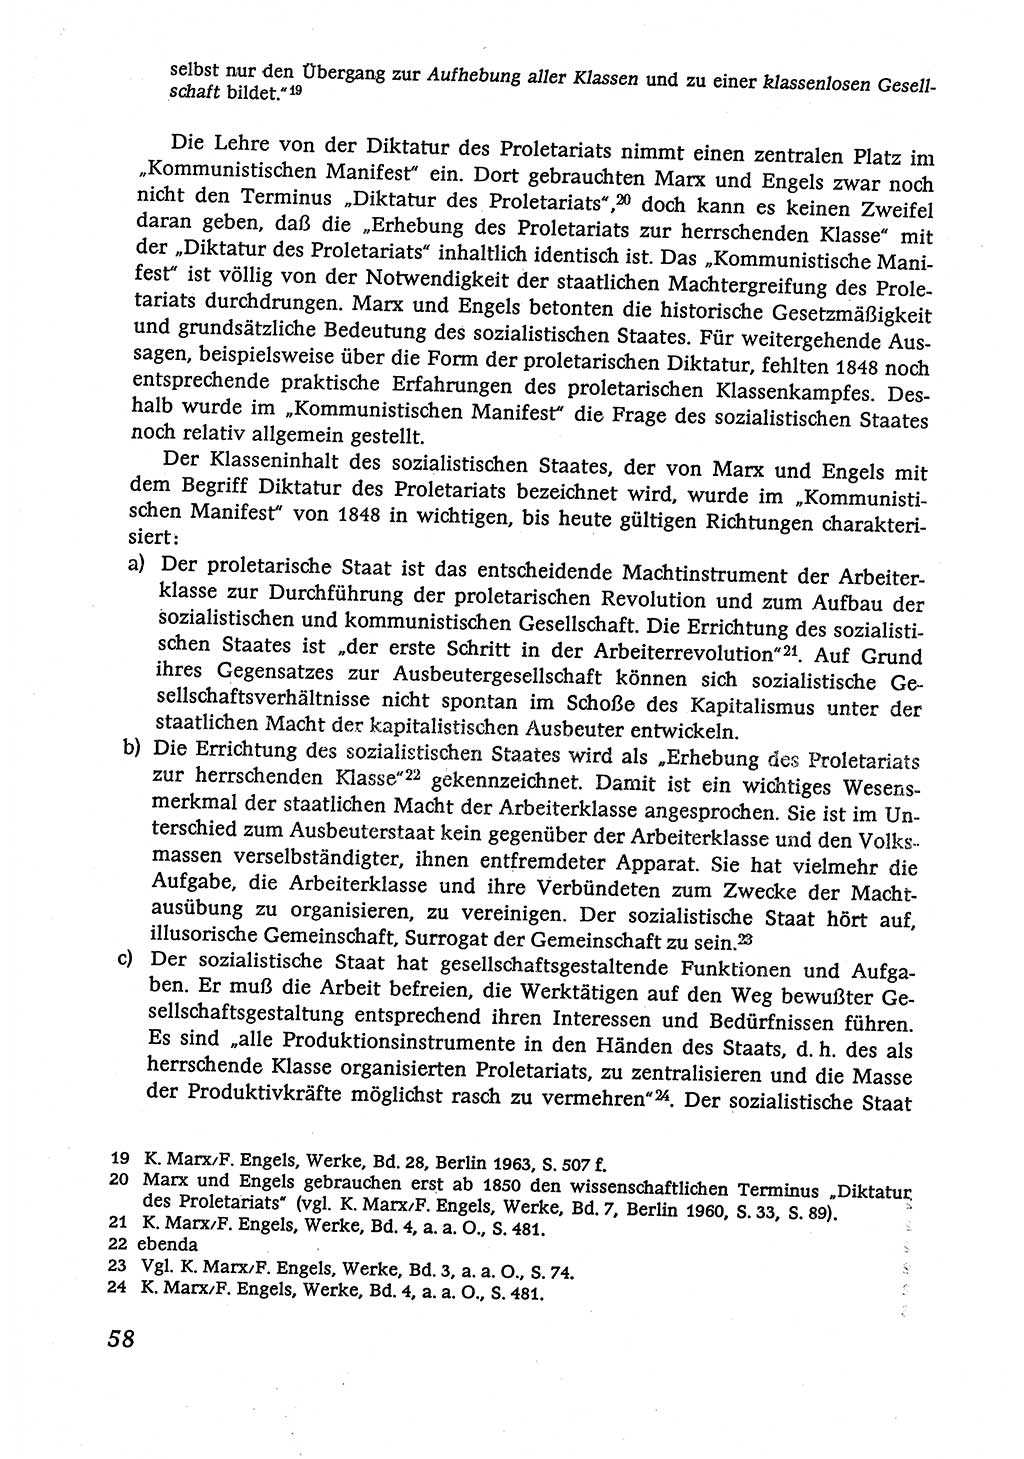 Marxistisch-leninistische (ML) Staats- und Rechtstheorie [Deutsche Demokratische Republik (DDR)], Lehrbuch 1980, Seite 58 (ML St.-R.-Th. DDR Lb. 1980, S. 58)